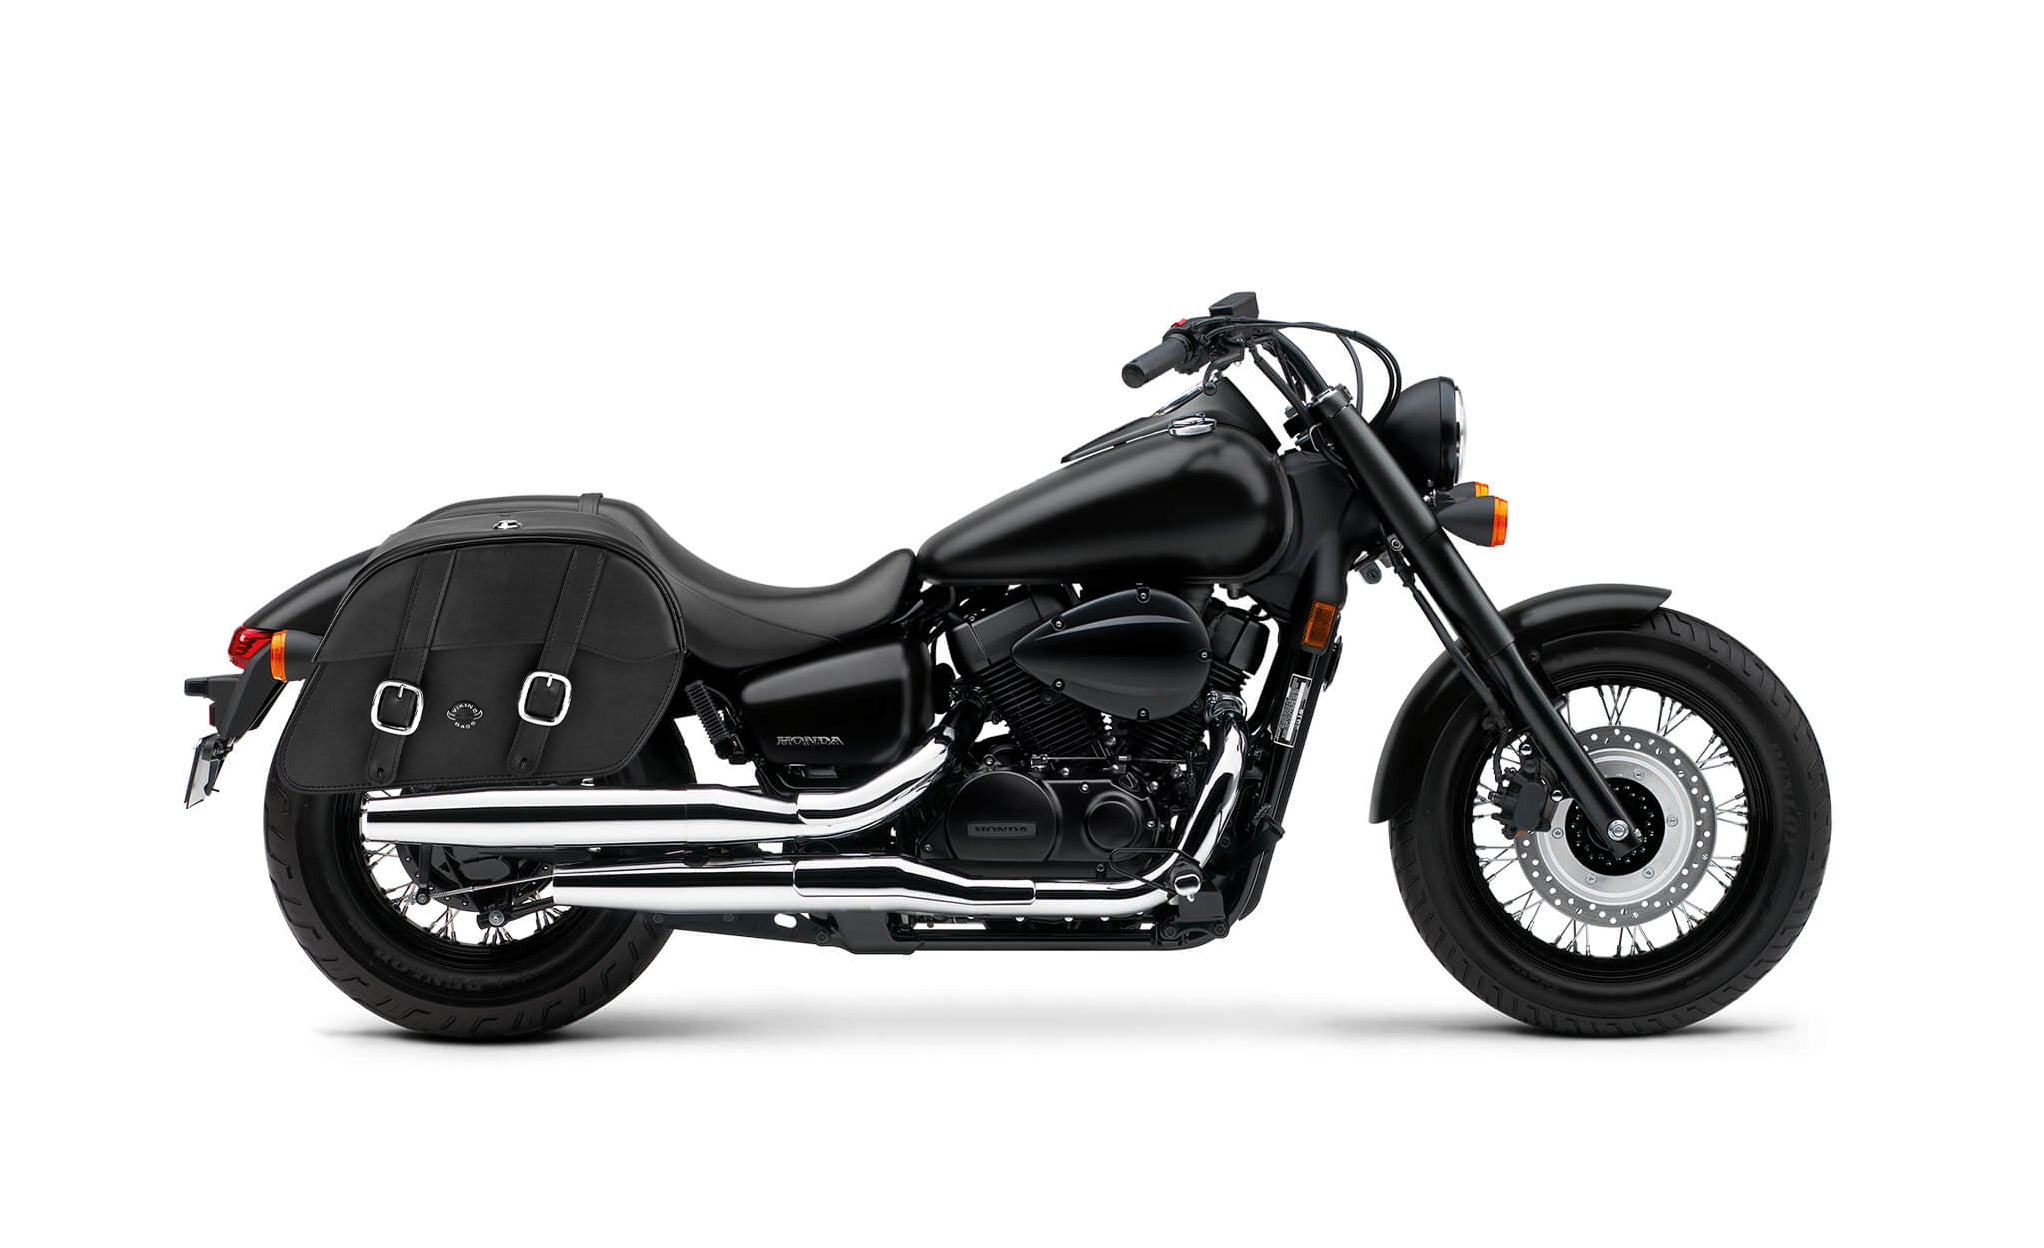 Viking Skarner Large Honda Shadow 750 Phantom Shock Cut Out Leather Motorcycle Saddlebags on Bike Photo @expand